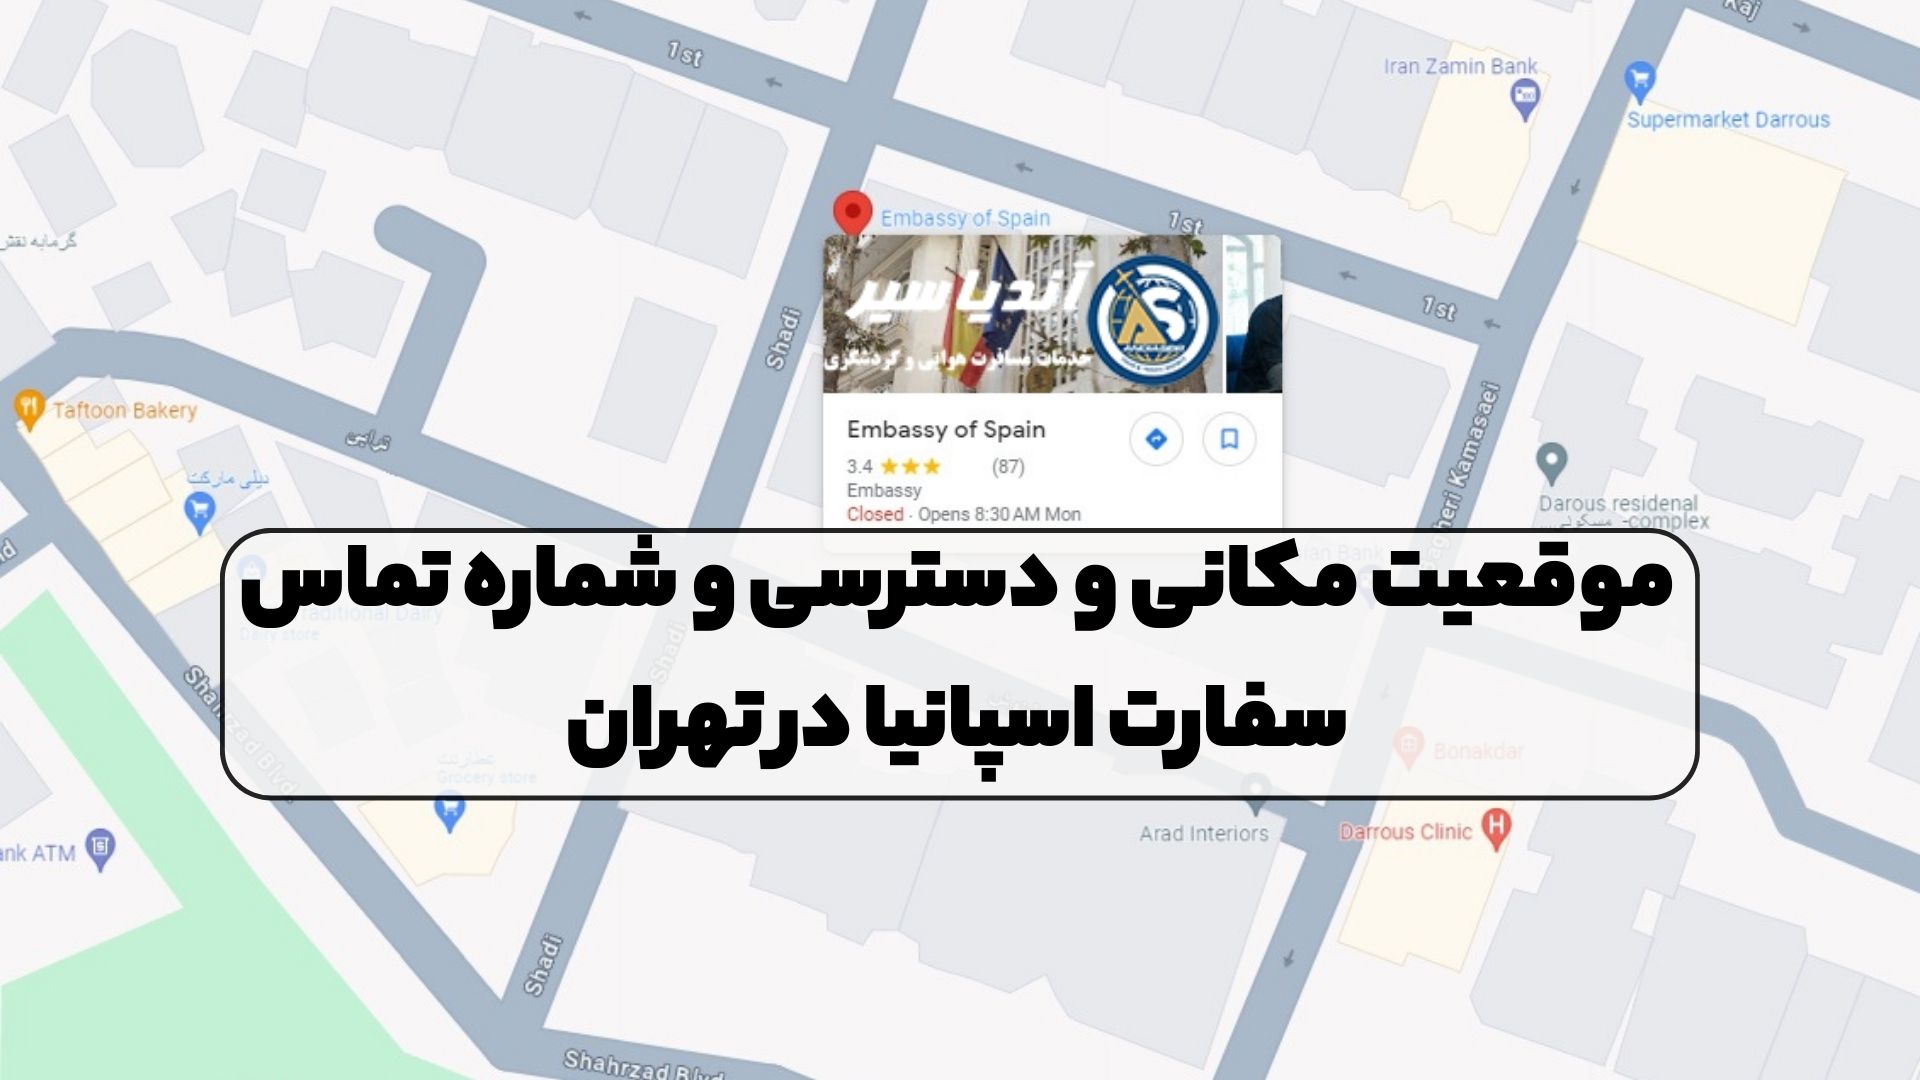 موقعیت مکانی و دسترسی و شماره تماس سفارت اسپانیا در تهران